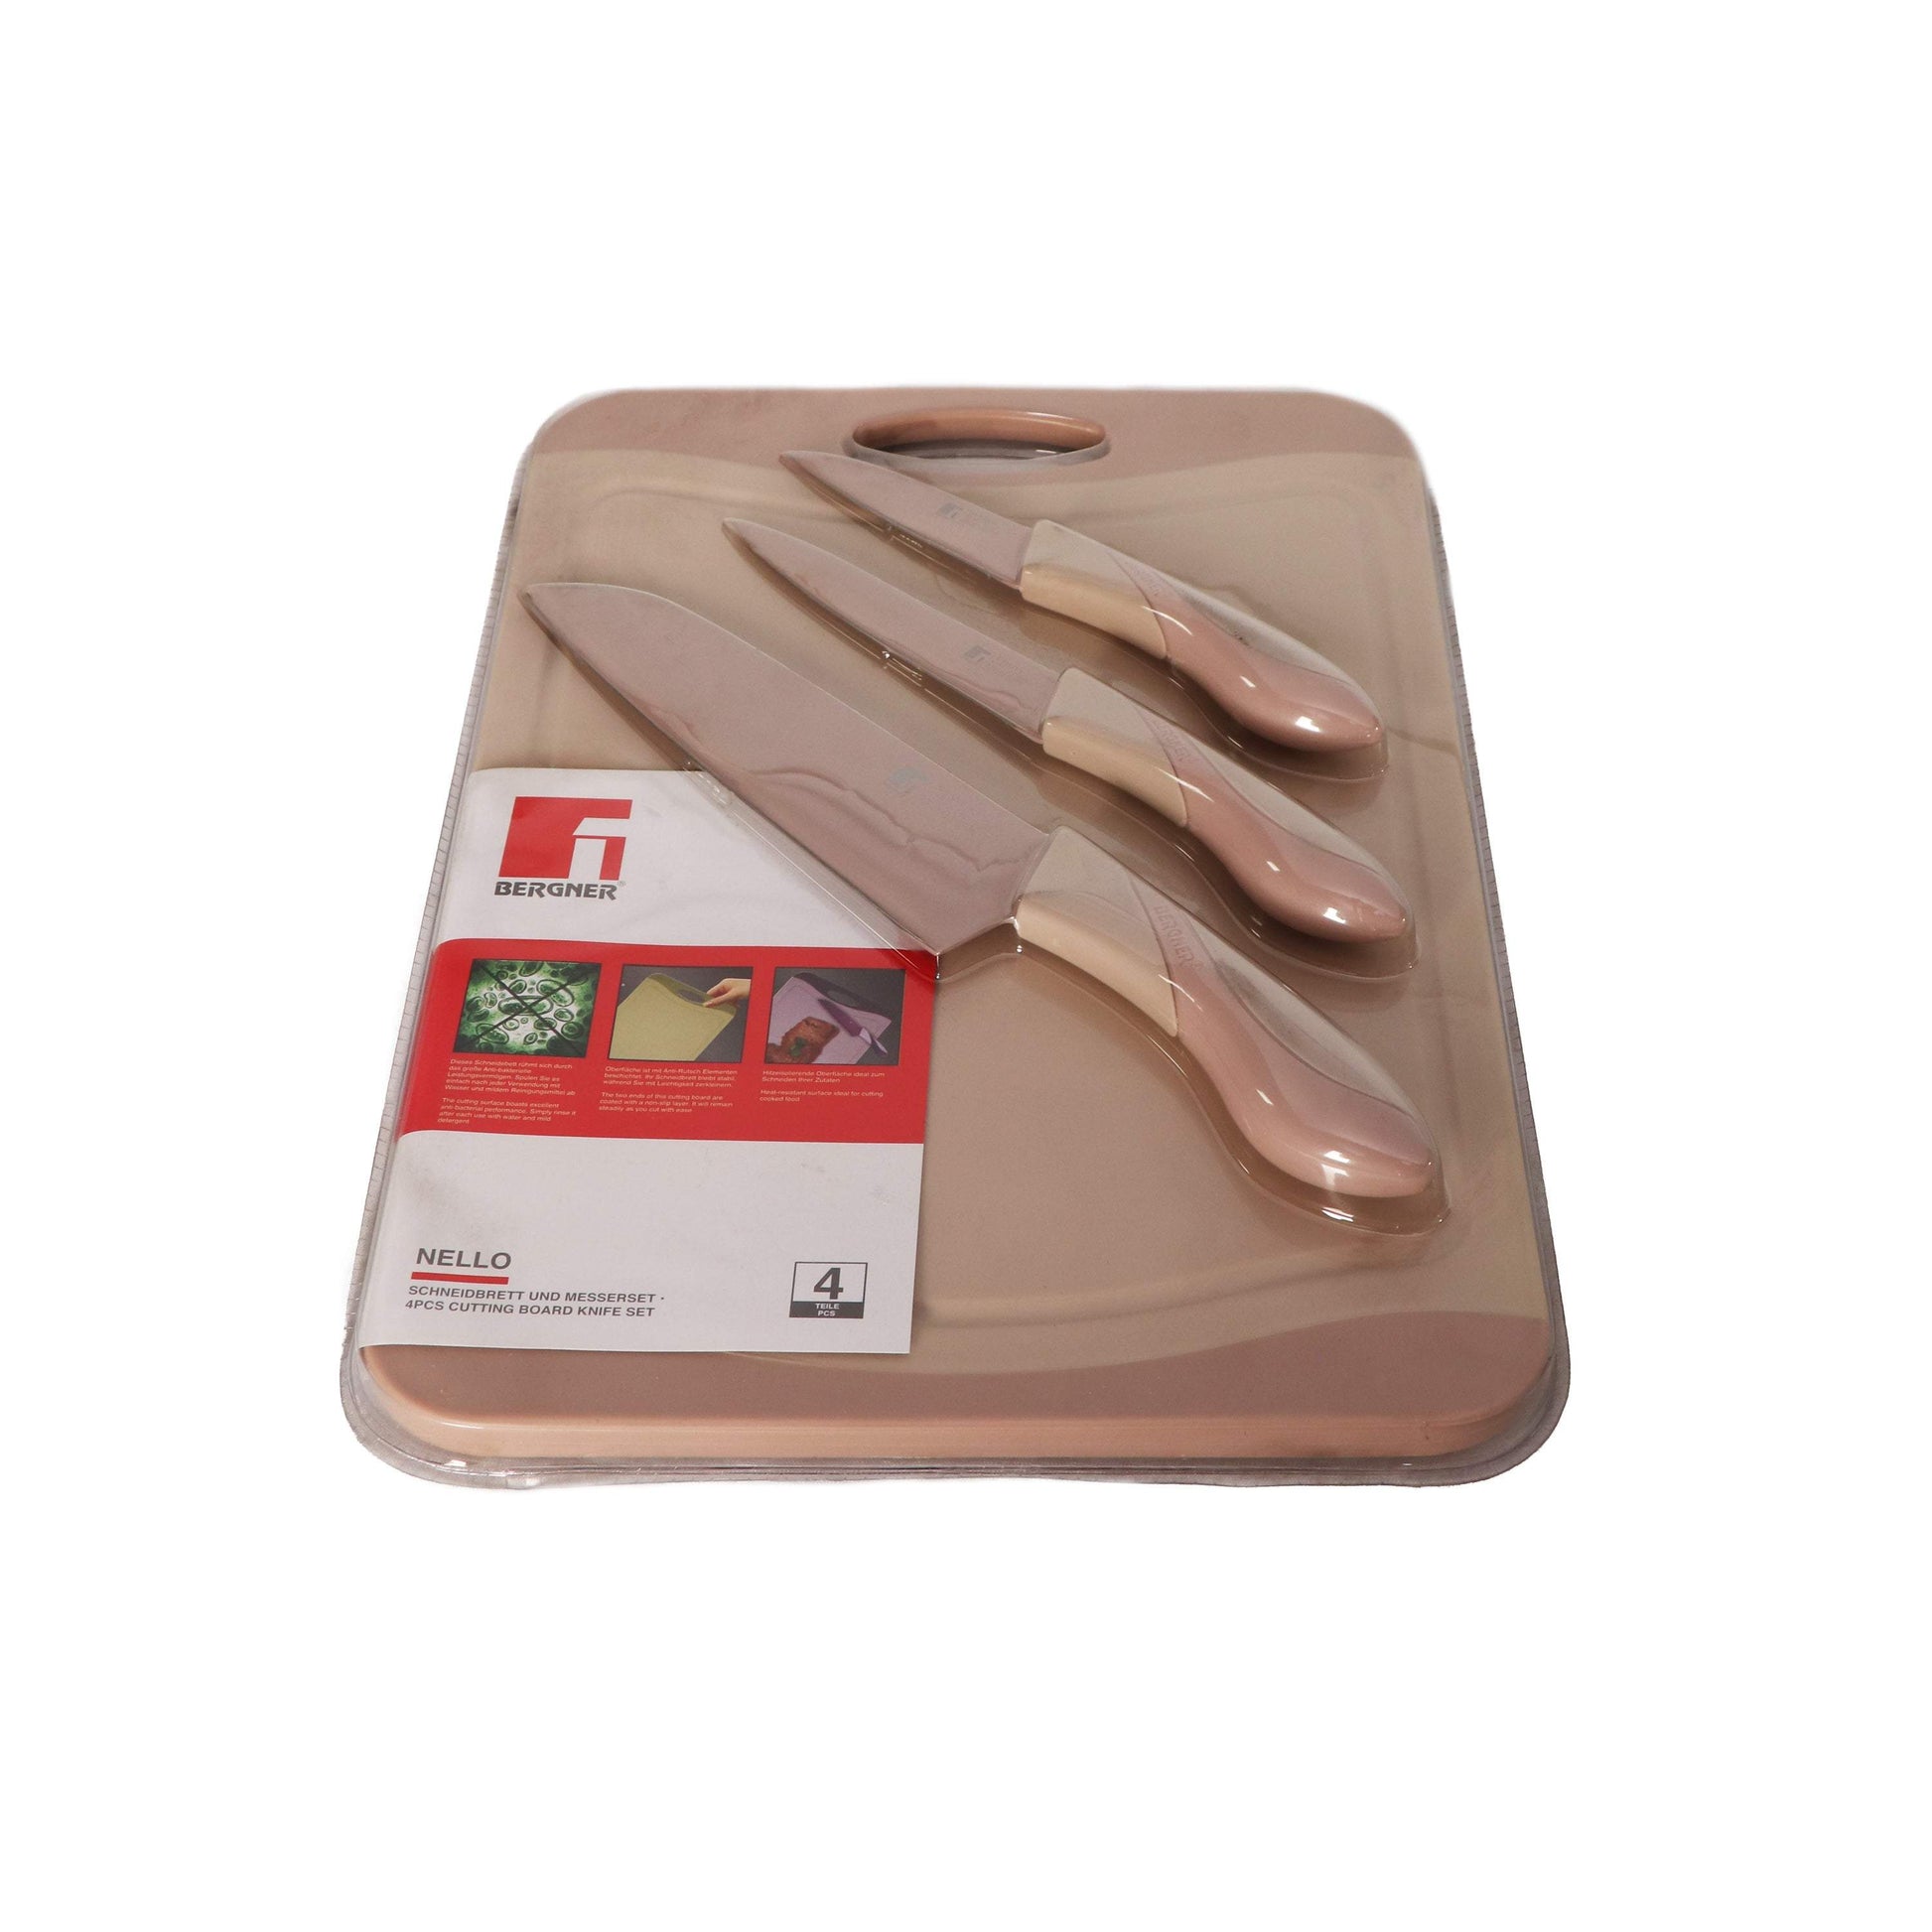 Bergner 4 Pcs Cutting Board Knife Set-Royal Brands Co-